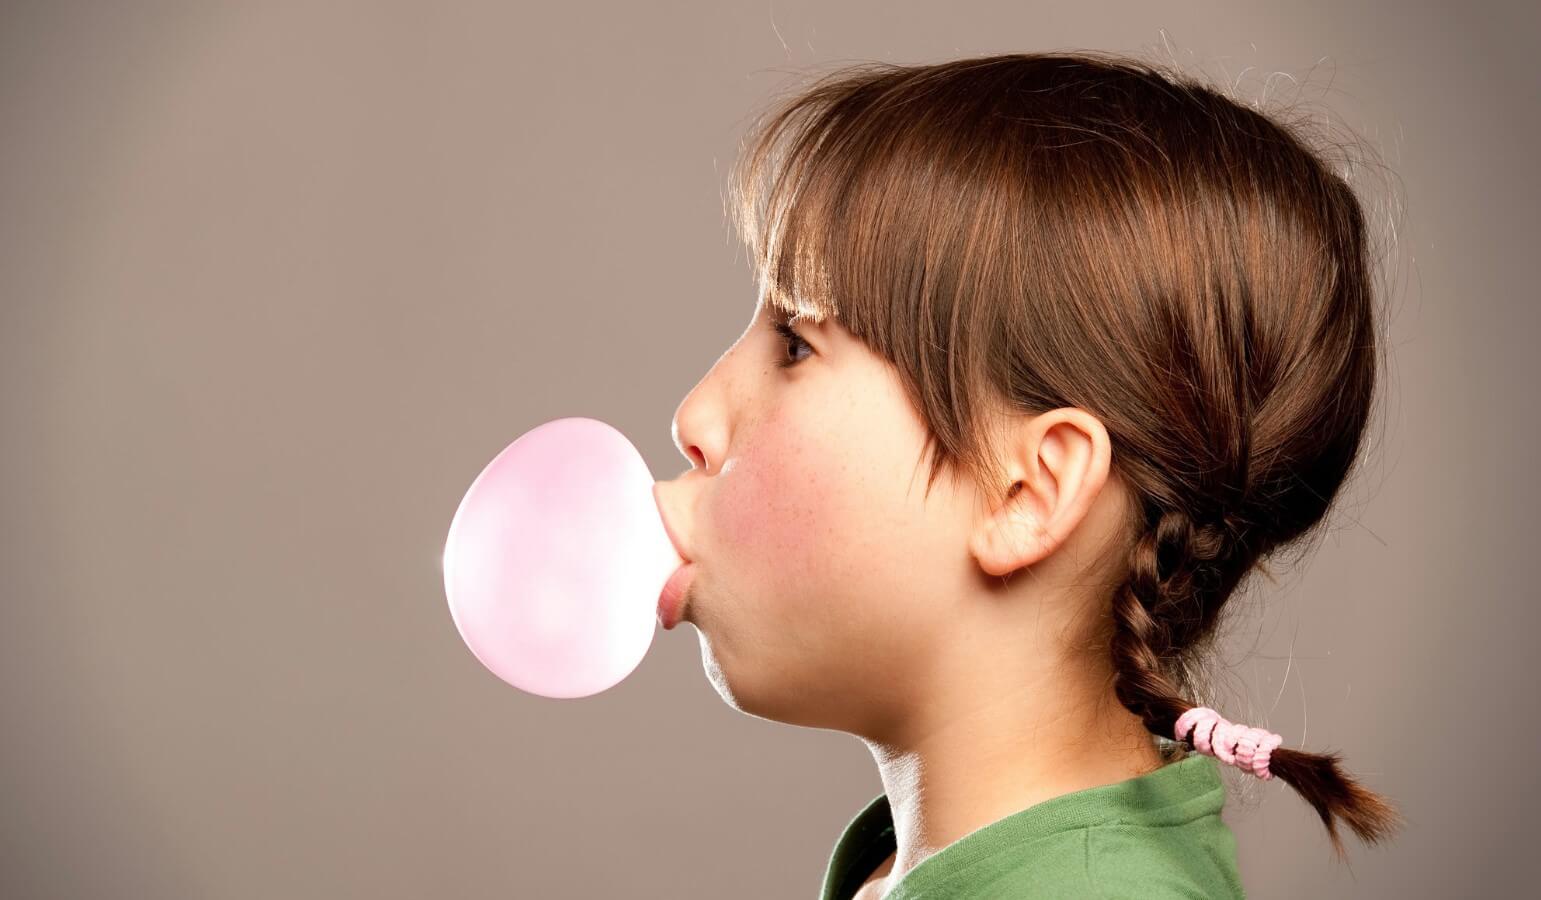 Жевательная резинка против стресса. Интересный факт: слово «Бубль-гум» означает разновидность жвачки, предназначенной для надувания пузырей. Фото.